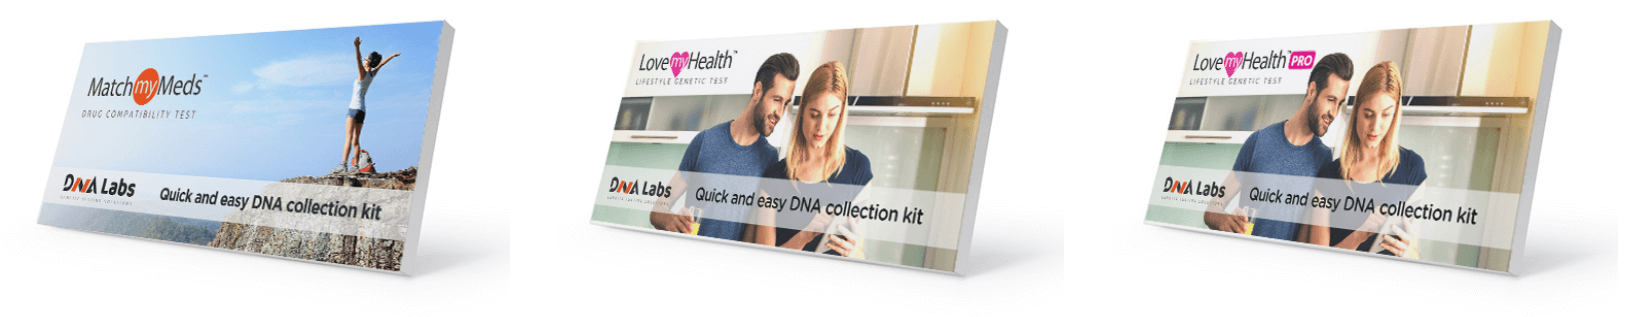 DNALabs testing kits